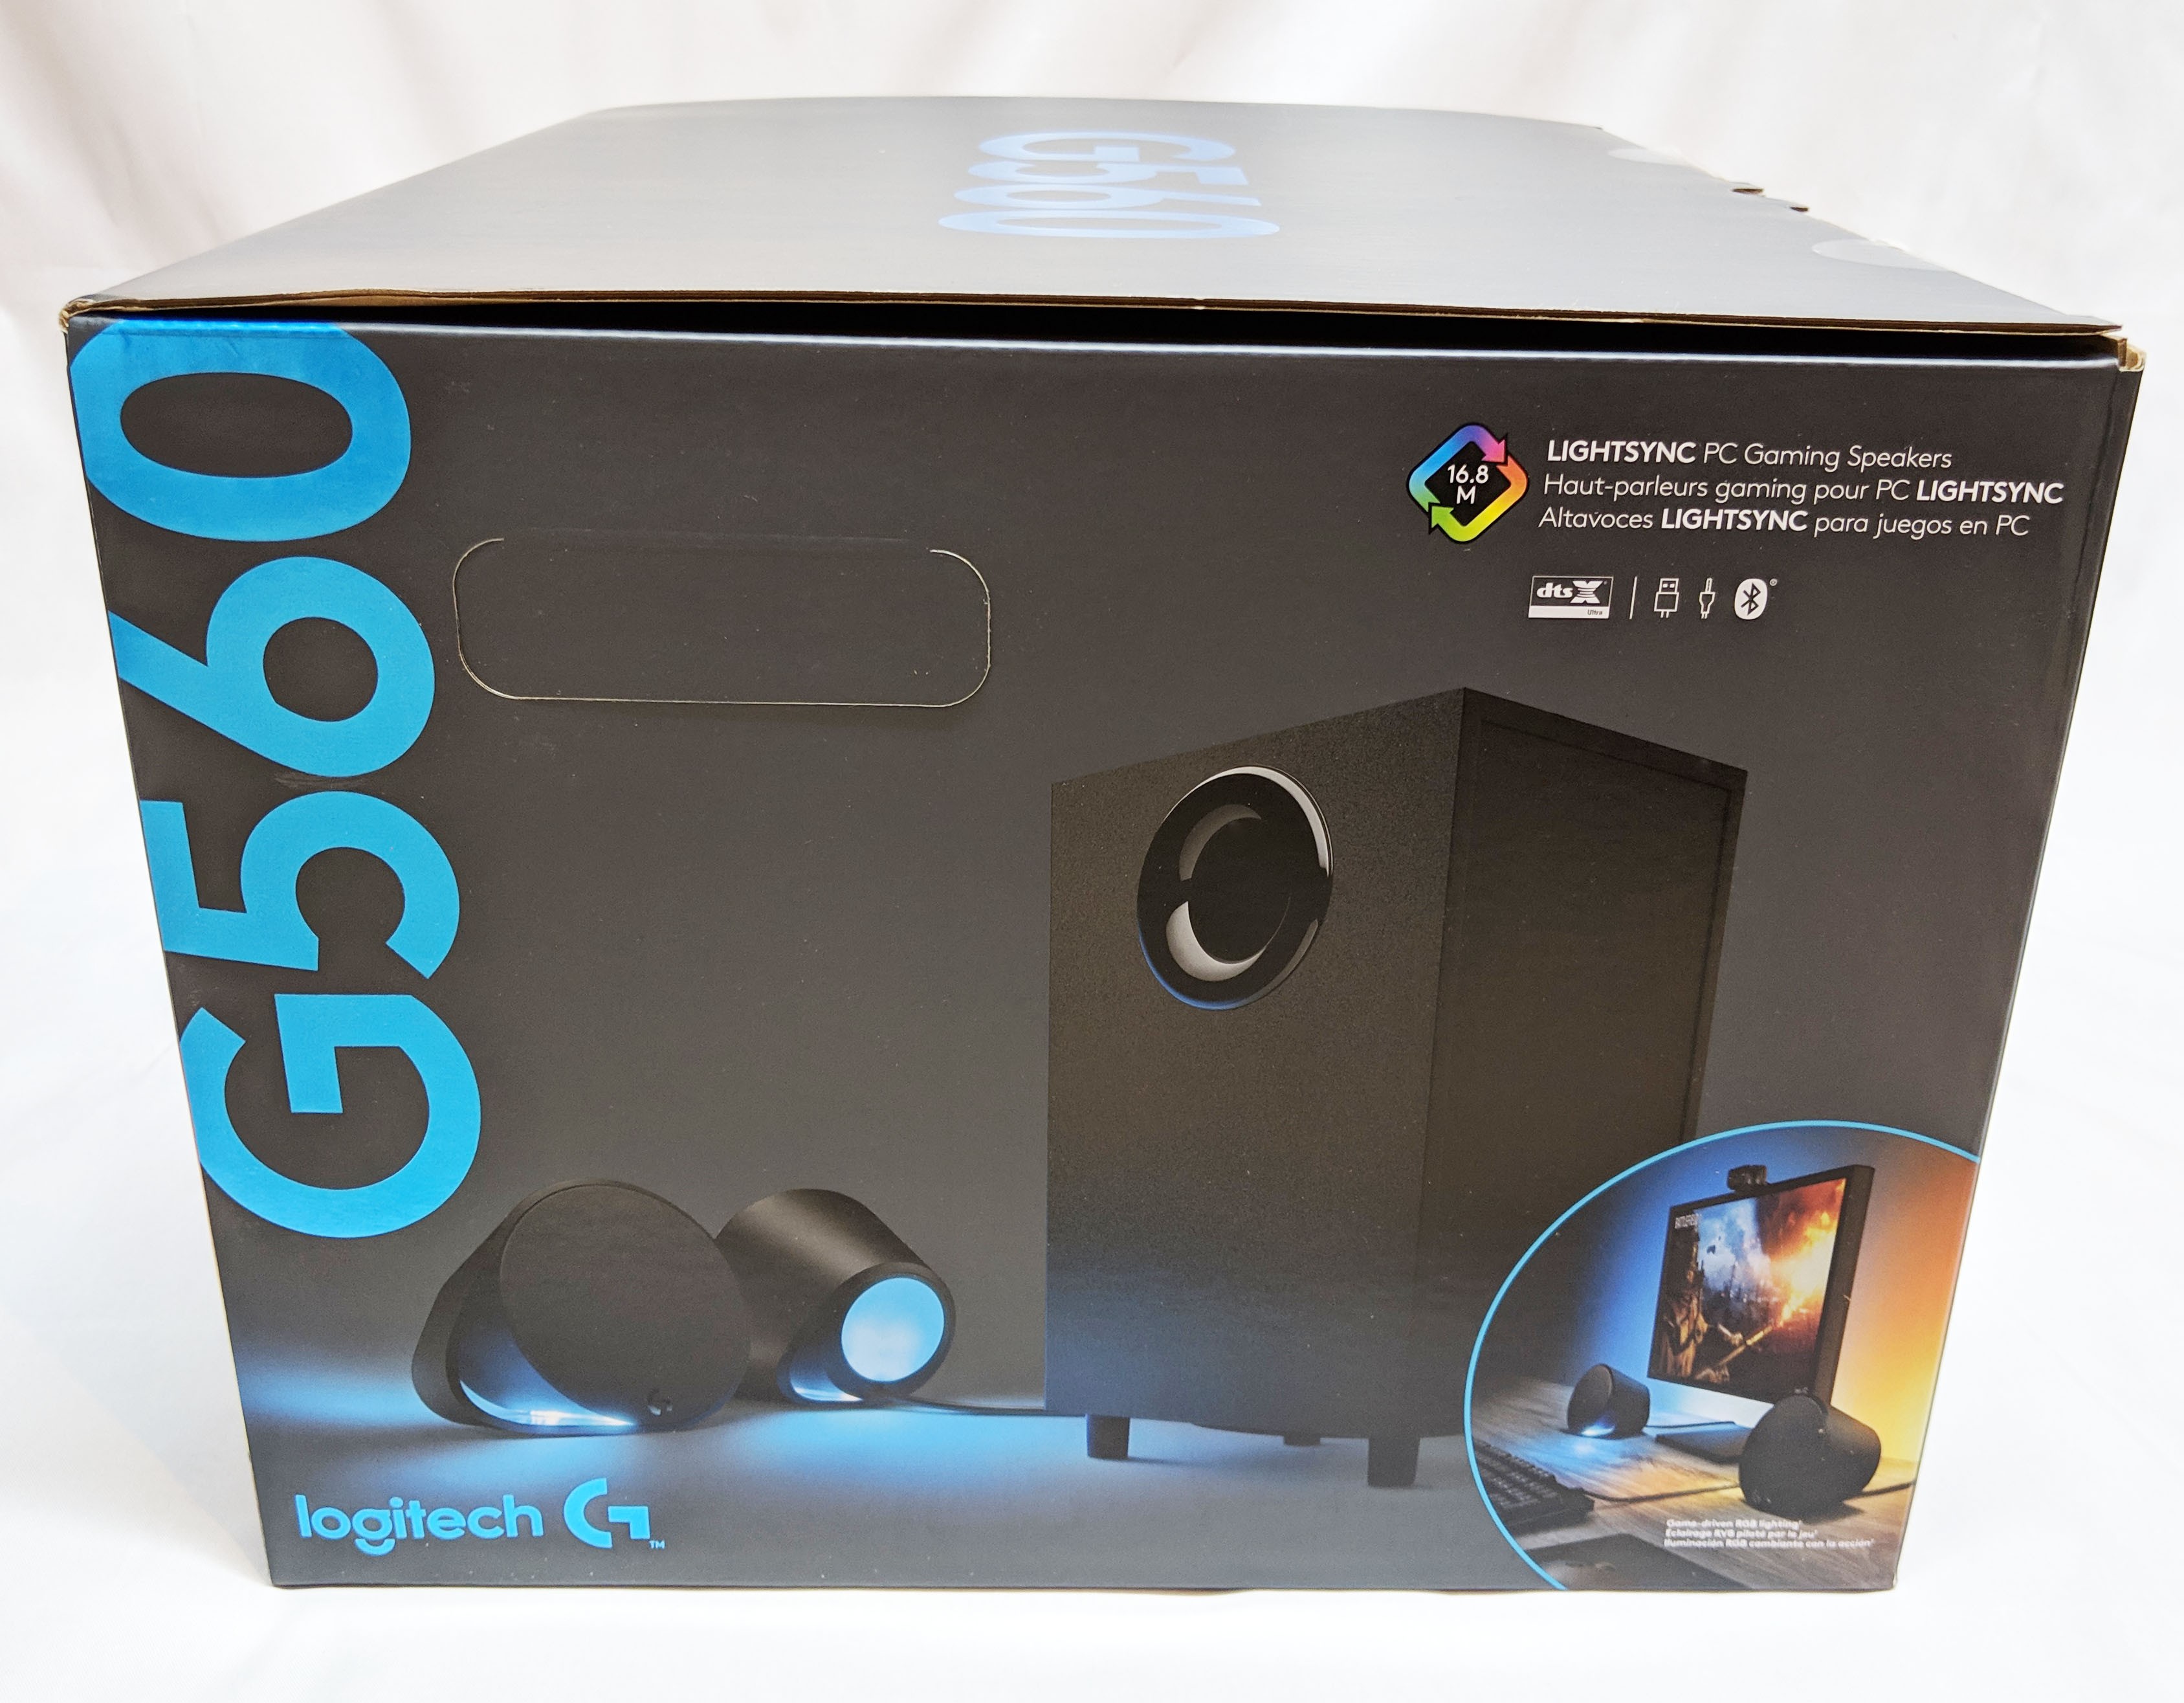 Logitech G560 - Best Gaming Speakers! 